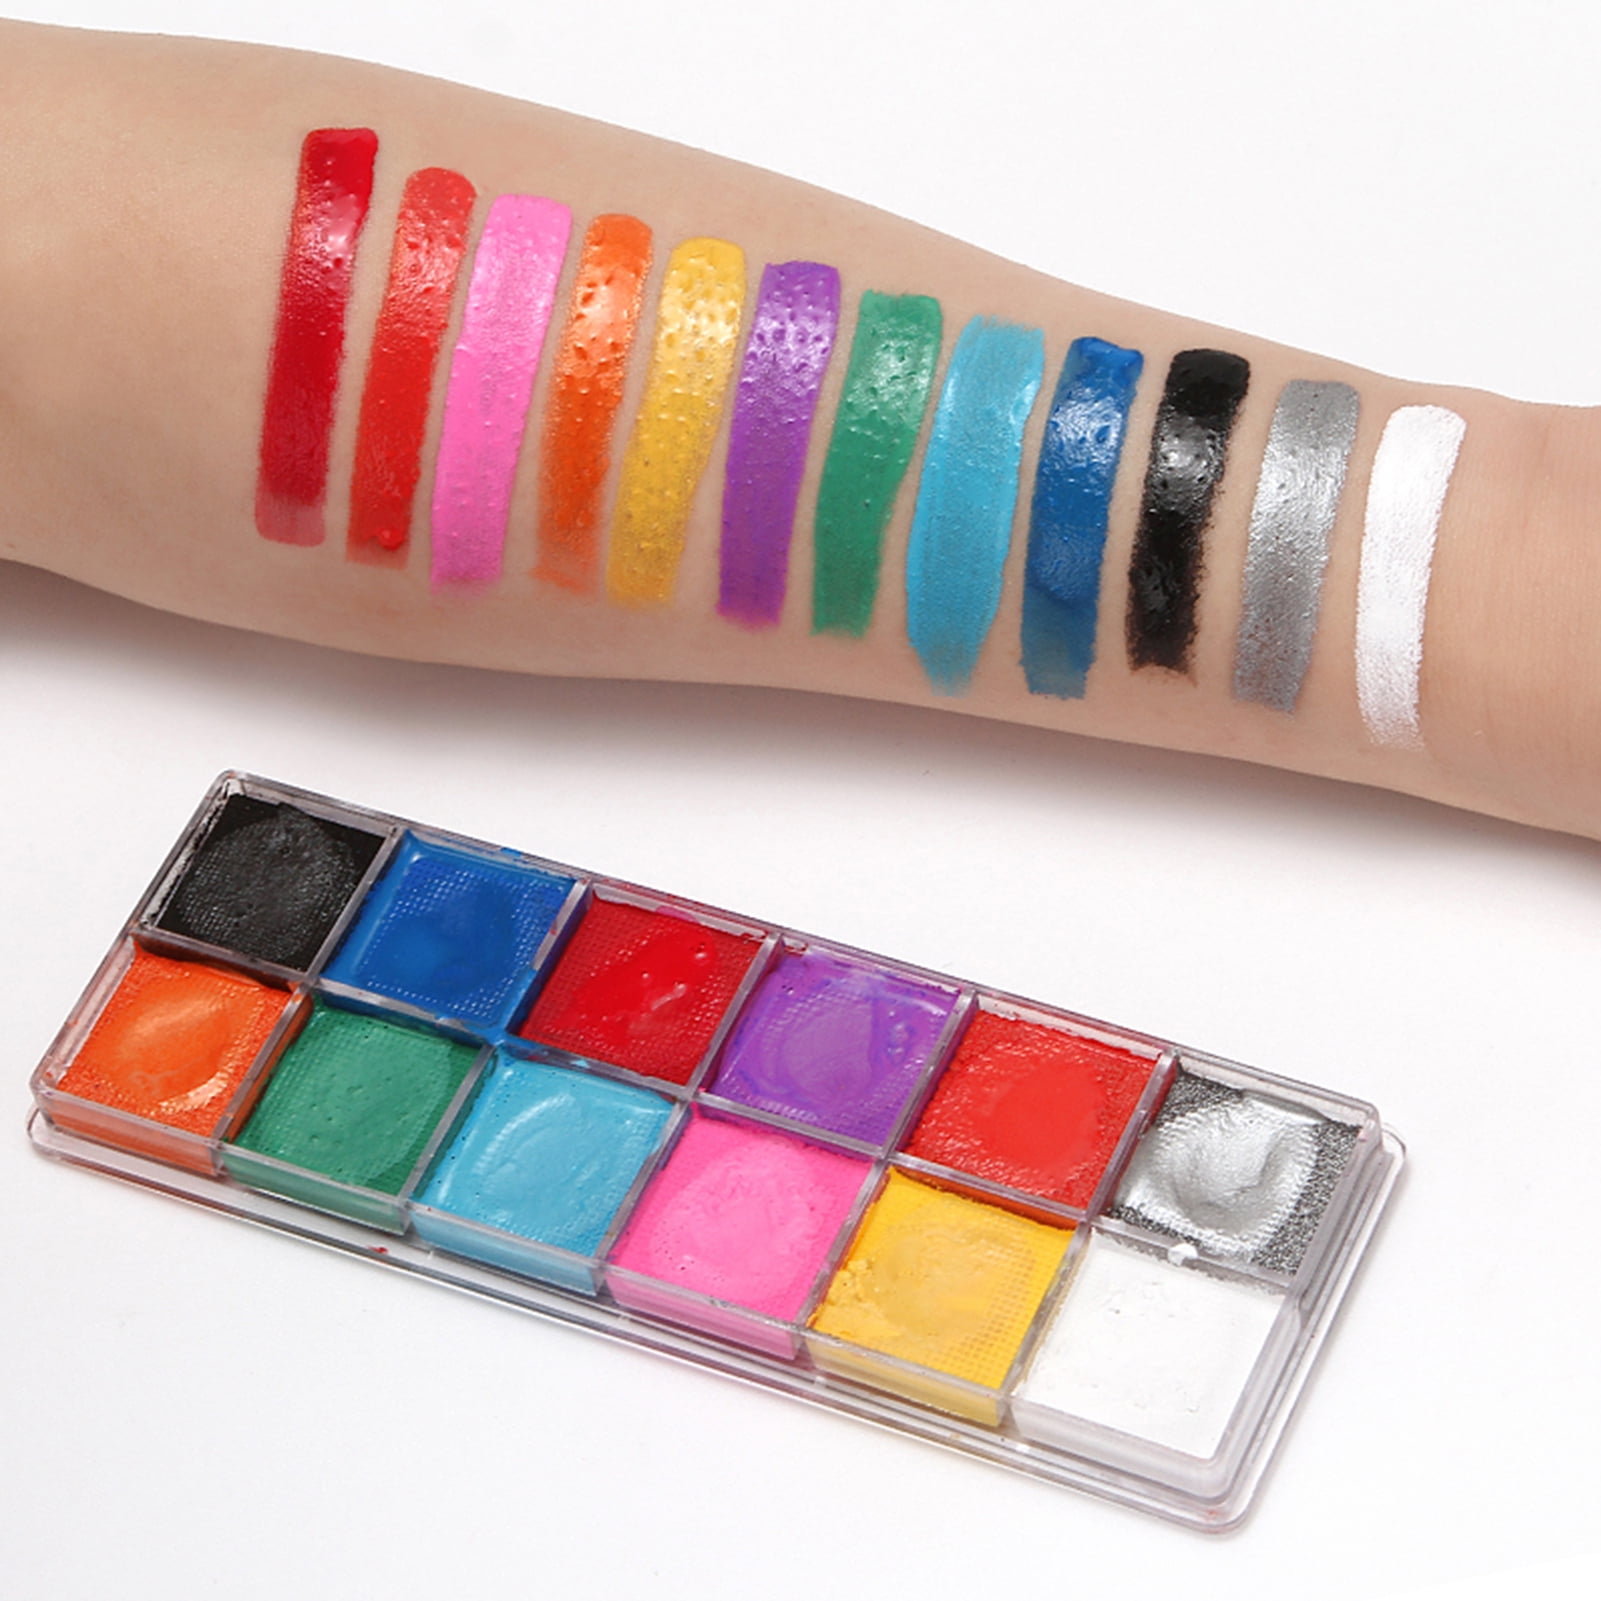 TAG Pastel Face Paint Palettes (6 Colors):  